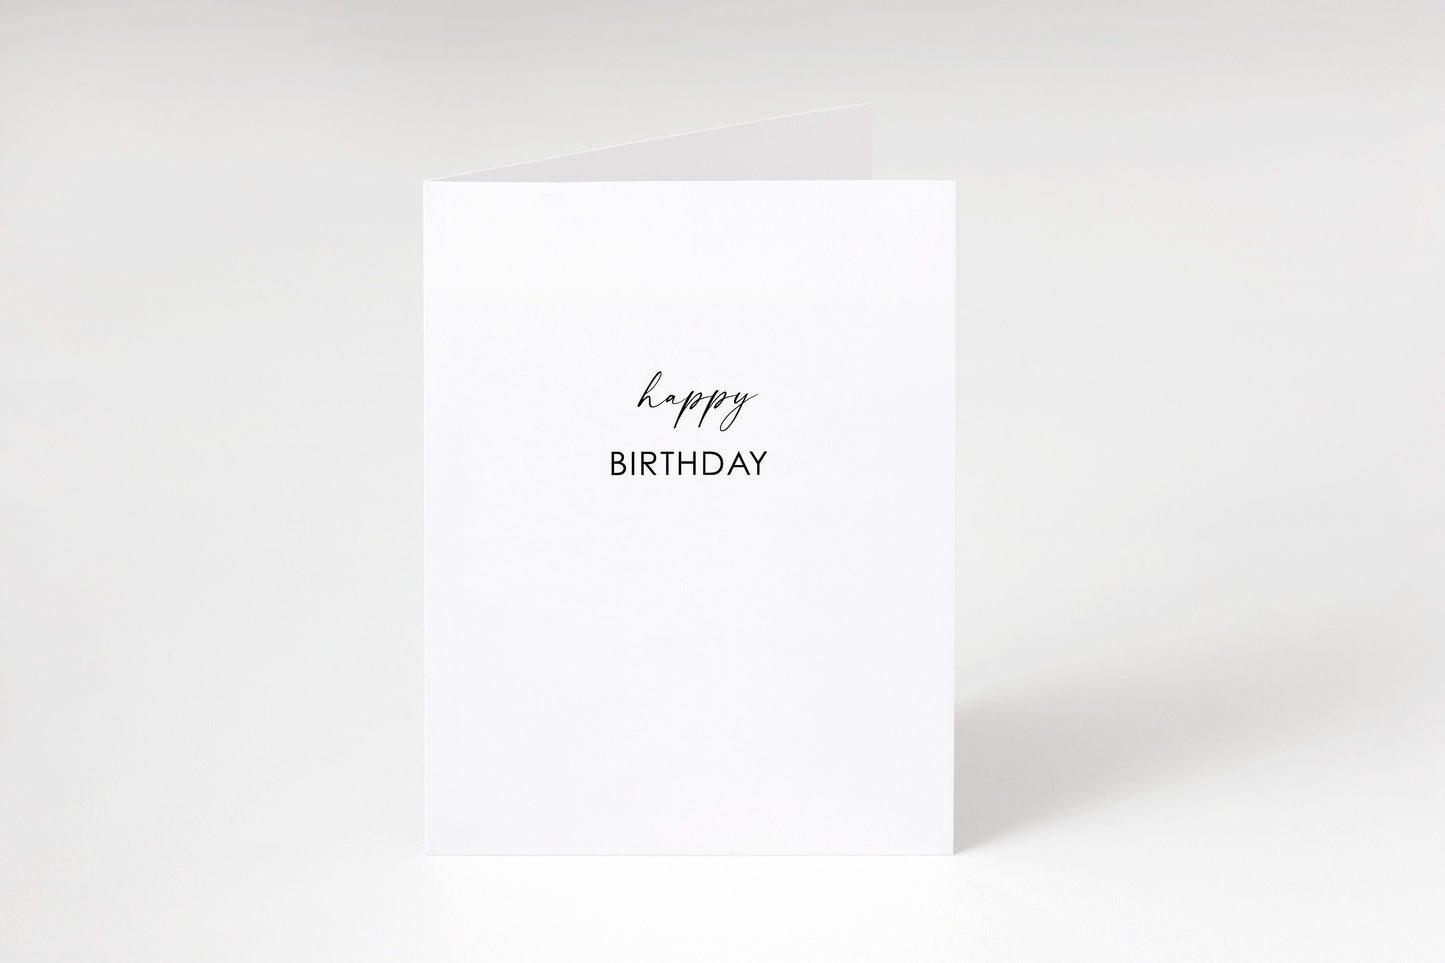 Happy birthday card,Birthday card,Happy Birthday,Minimalist birthday card,Card for friend,Gender neutral card,Luxury birthday card